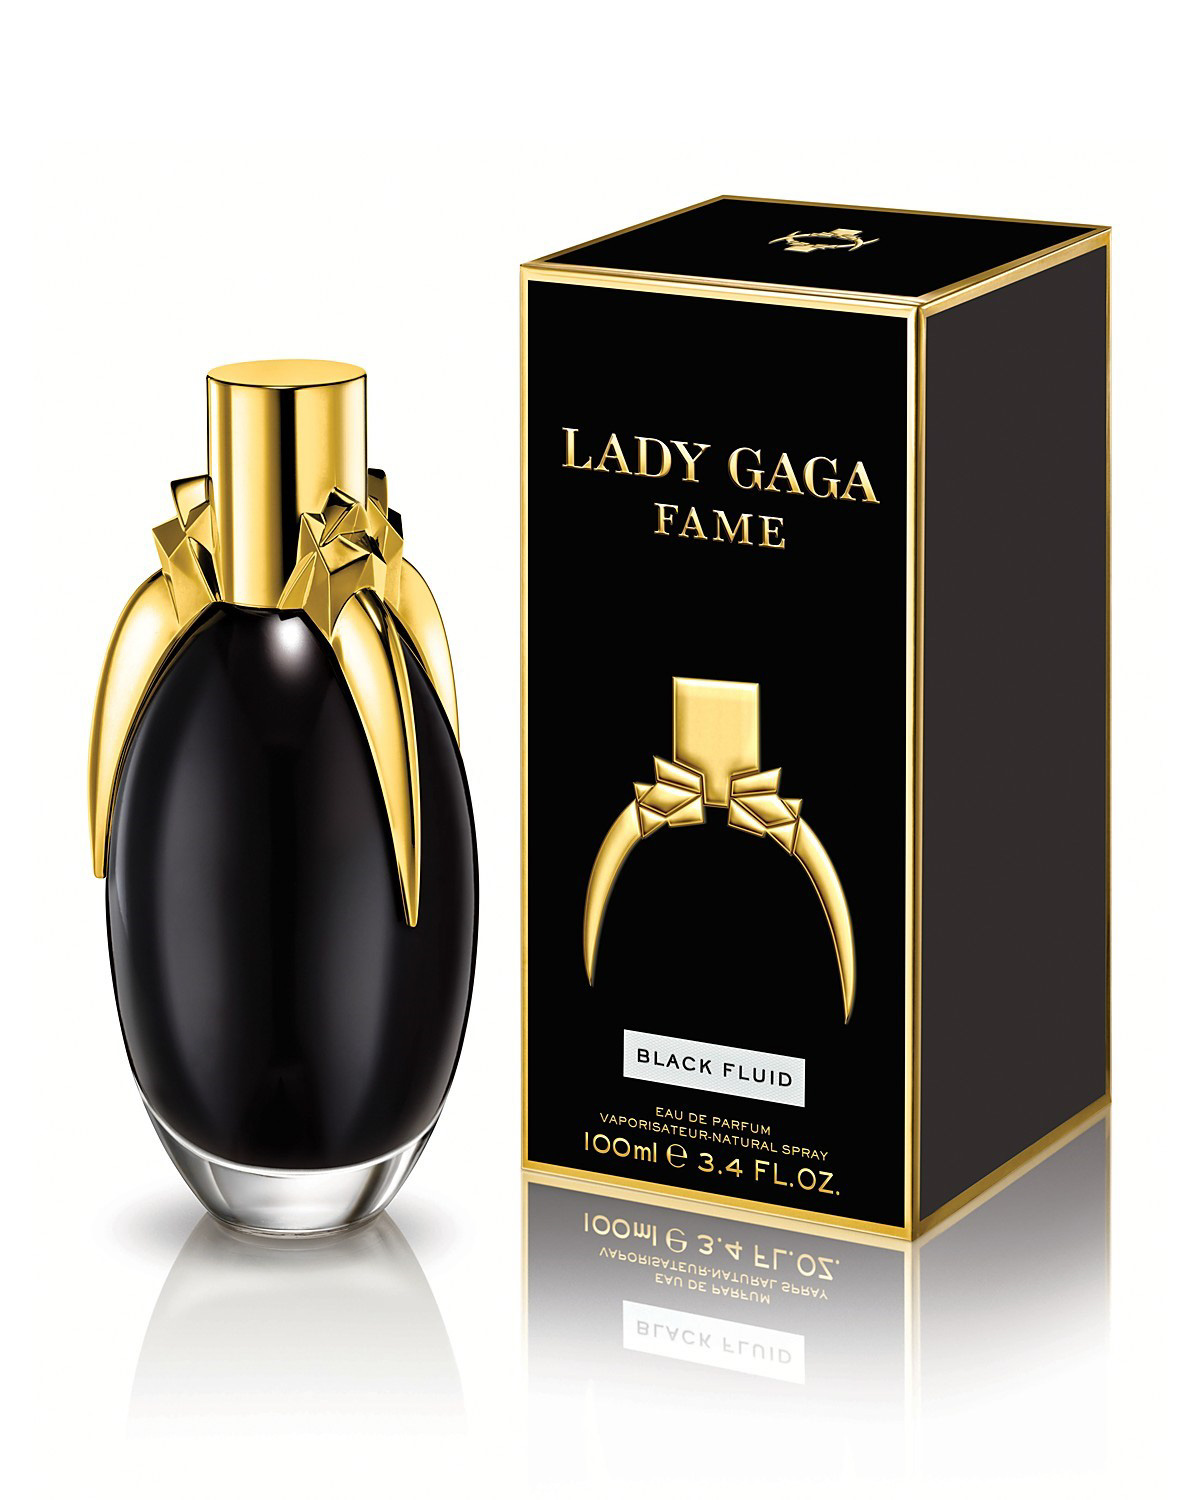 Fame by Lady Gaga, Eau de Parfum for Women, 3.4 oz - image 2 of 6